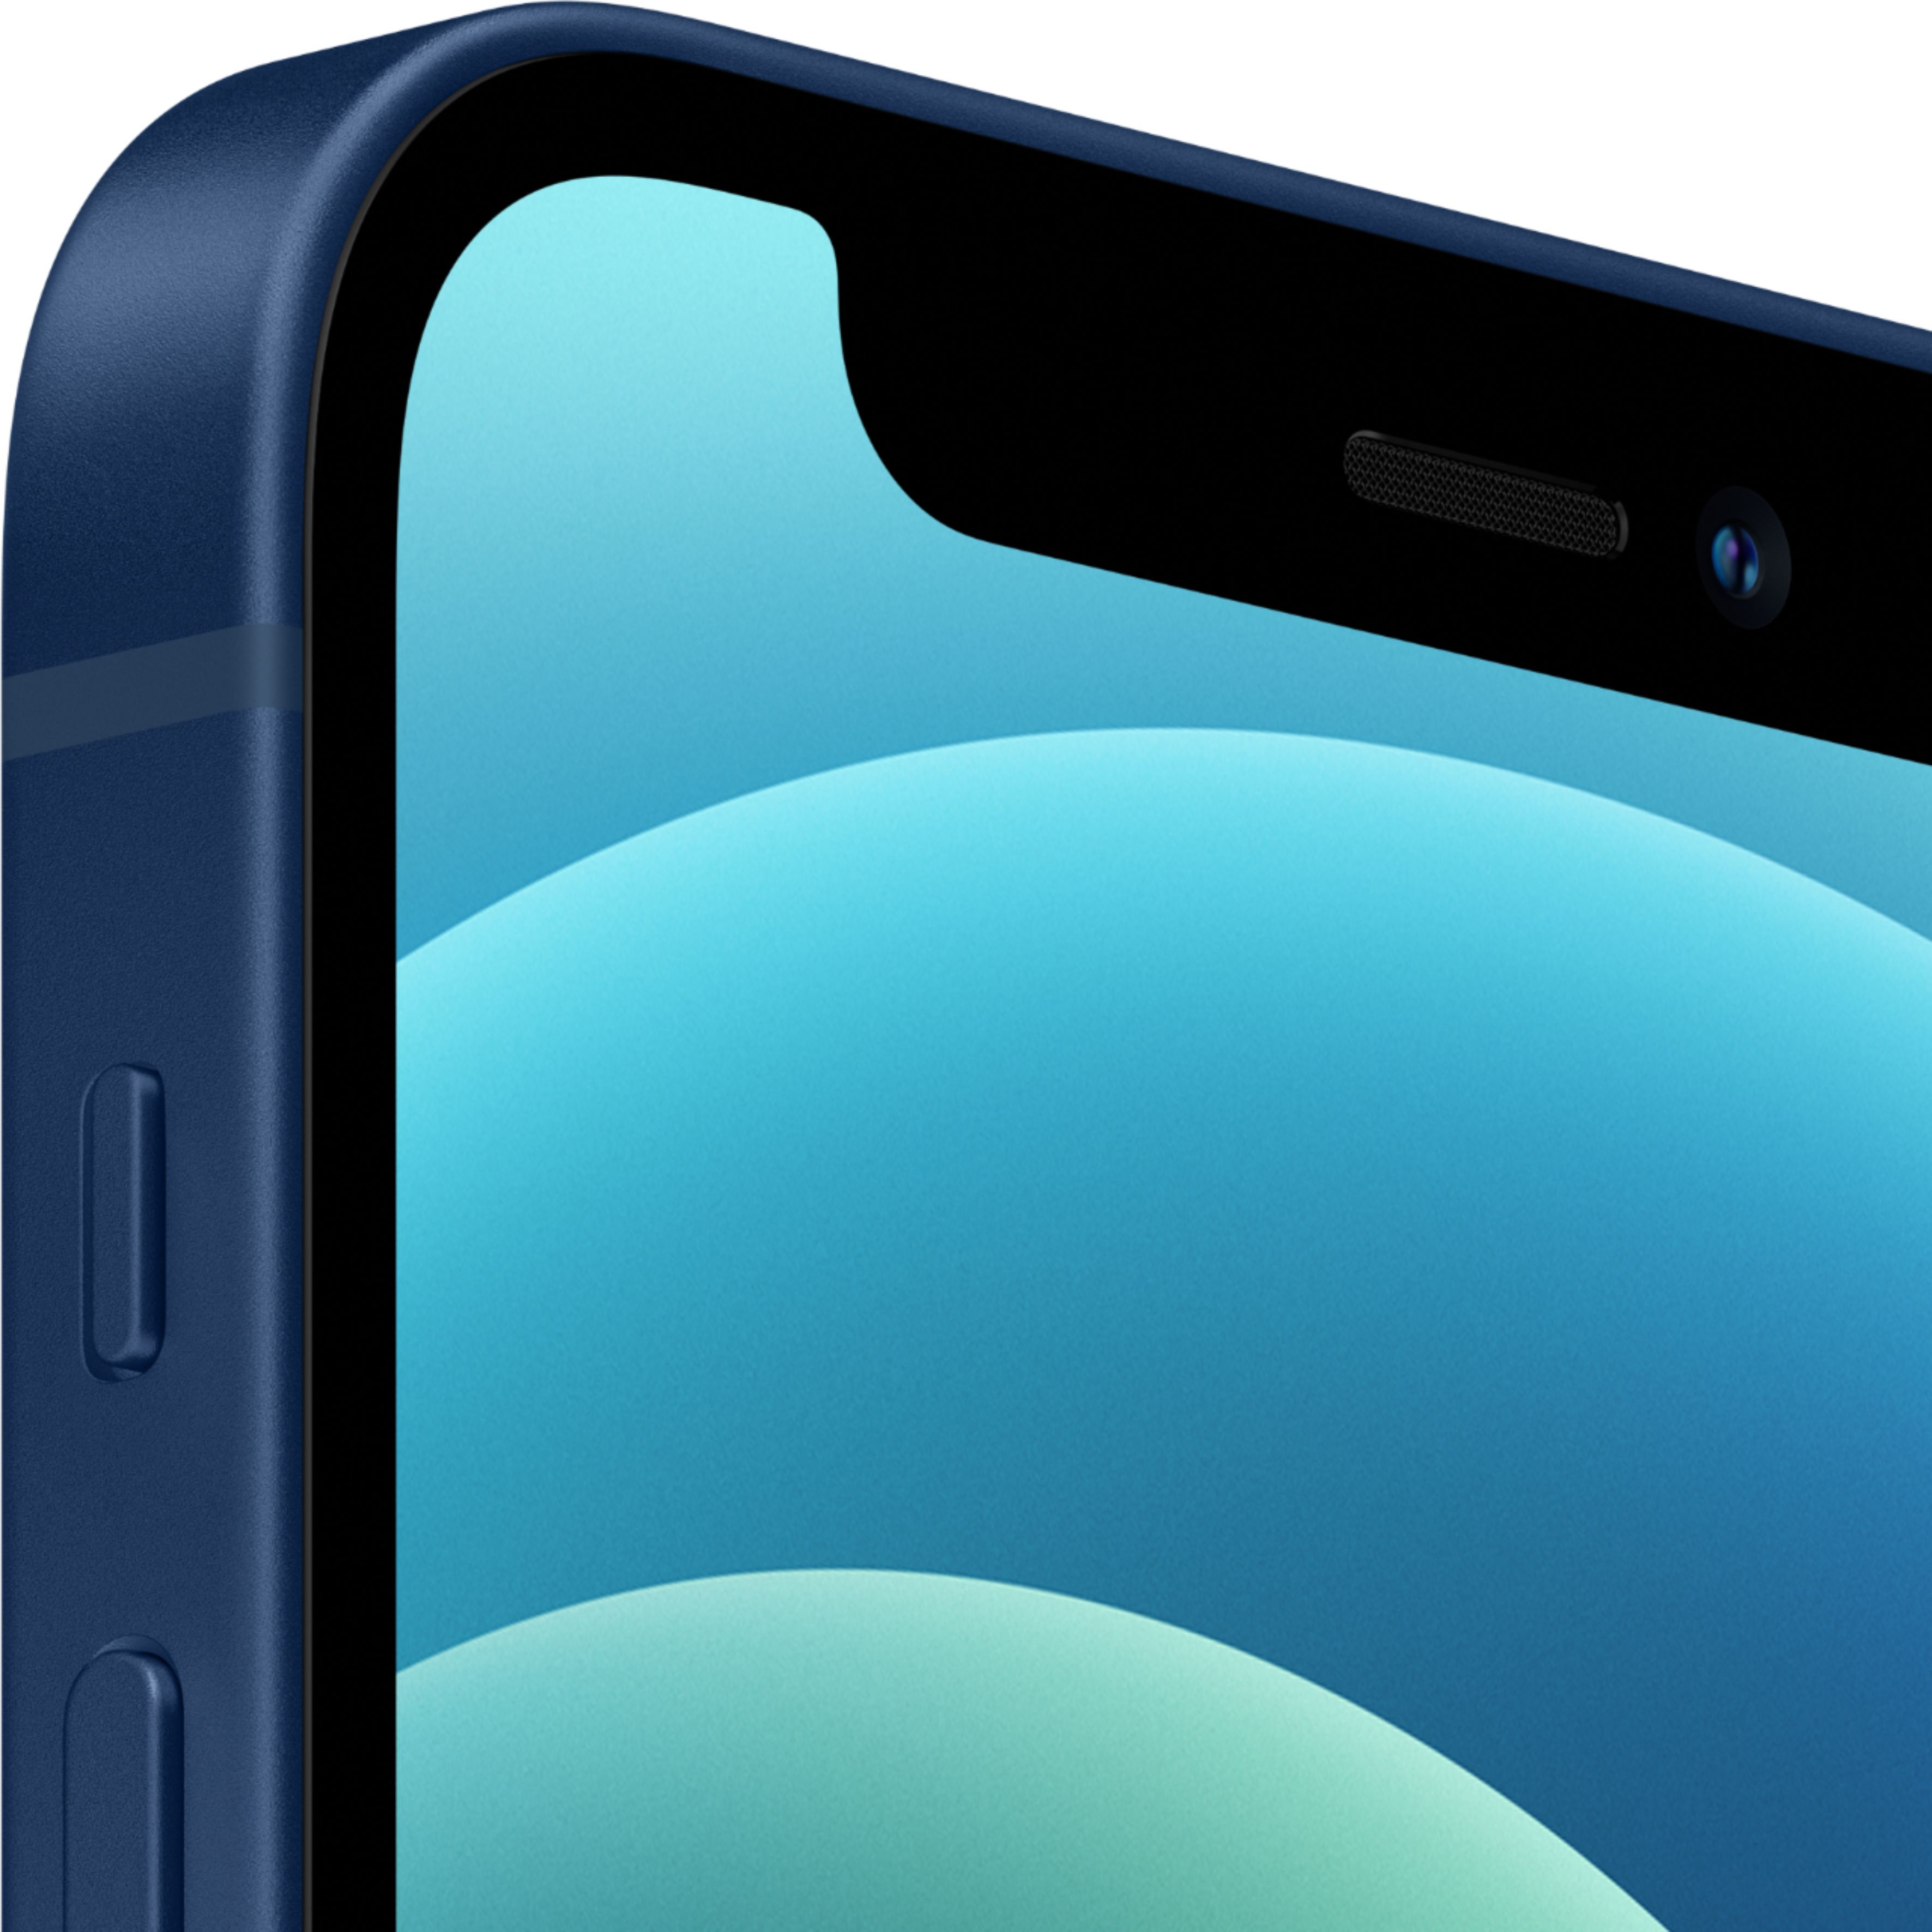 Apple iPhone 12 mini 5G 64GB Blue (Verizon) MG8J3LL/A - Best Buy